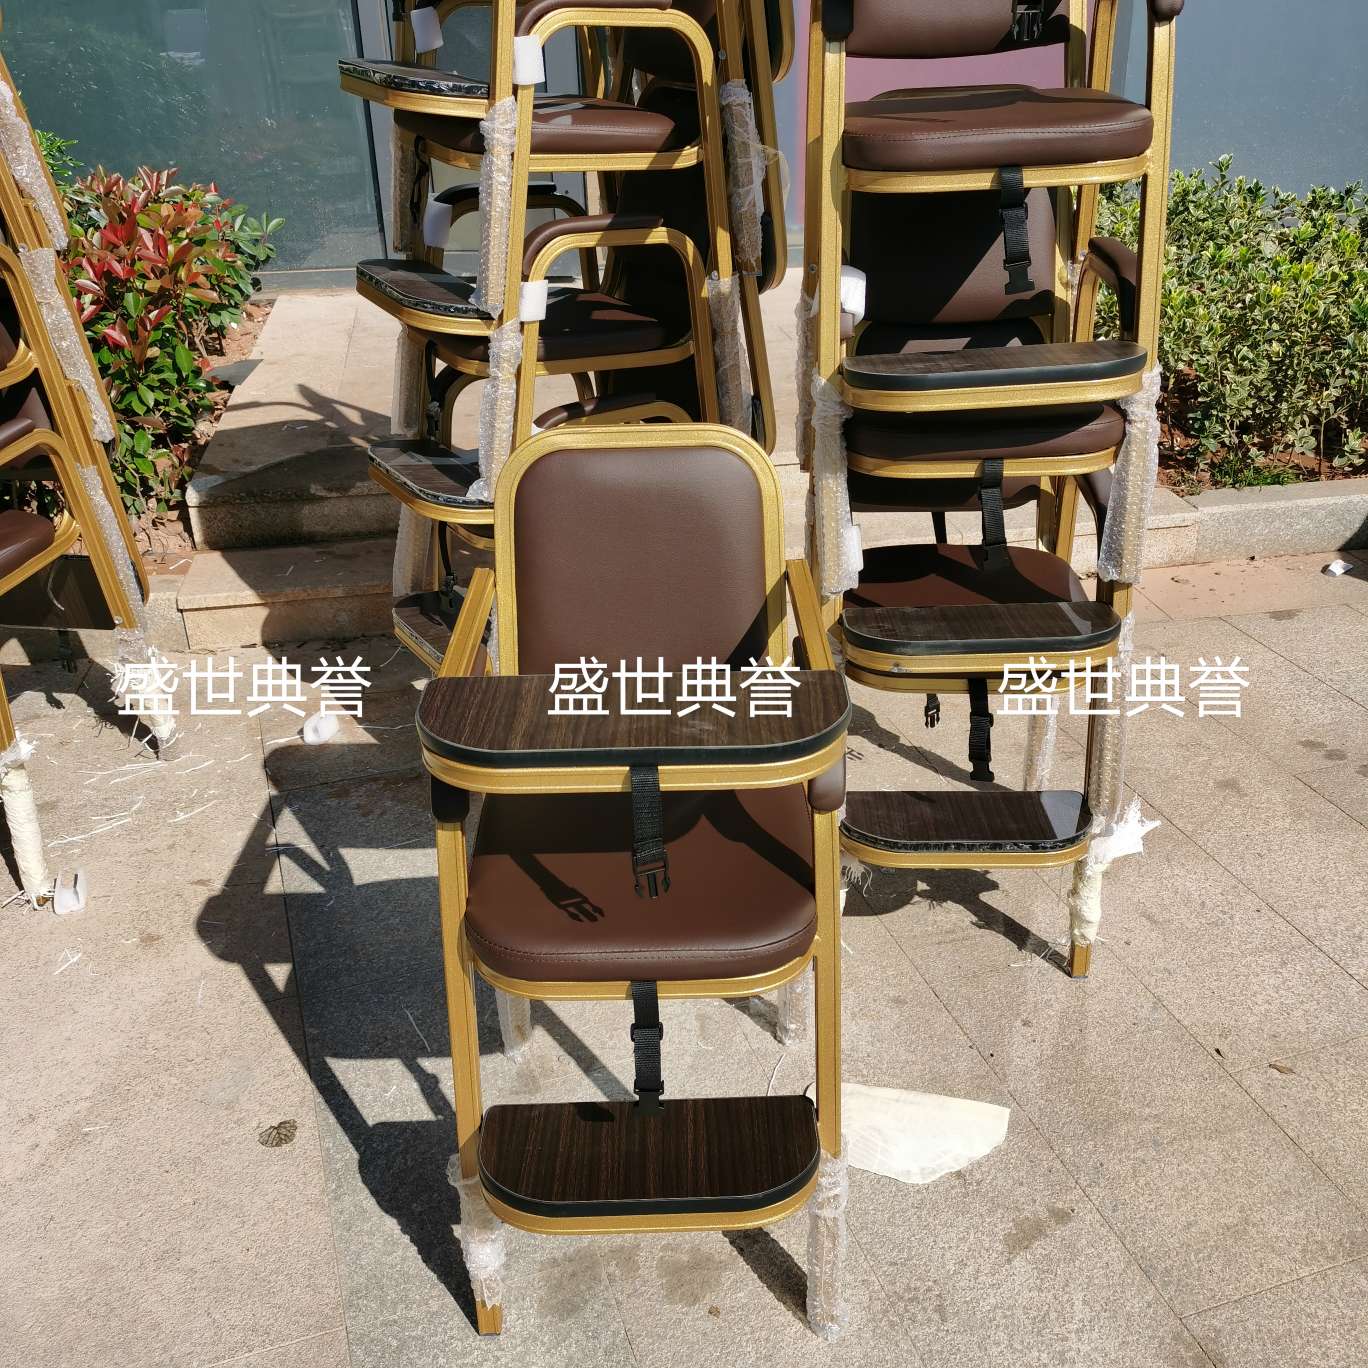 杭州国际宴会中心宝宝餐椅酒店宴会厅铝合金宝宝椅餐厅包厢儿童椅图